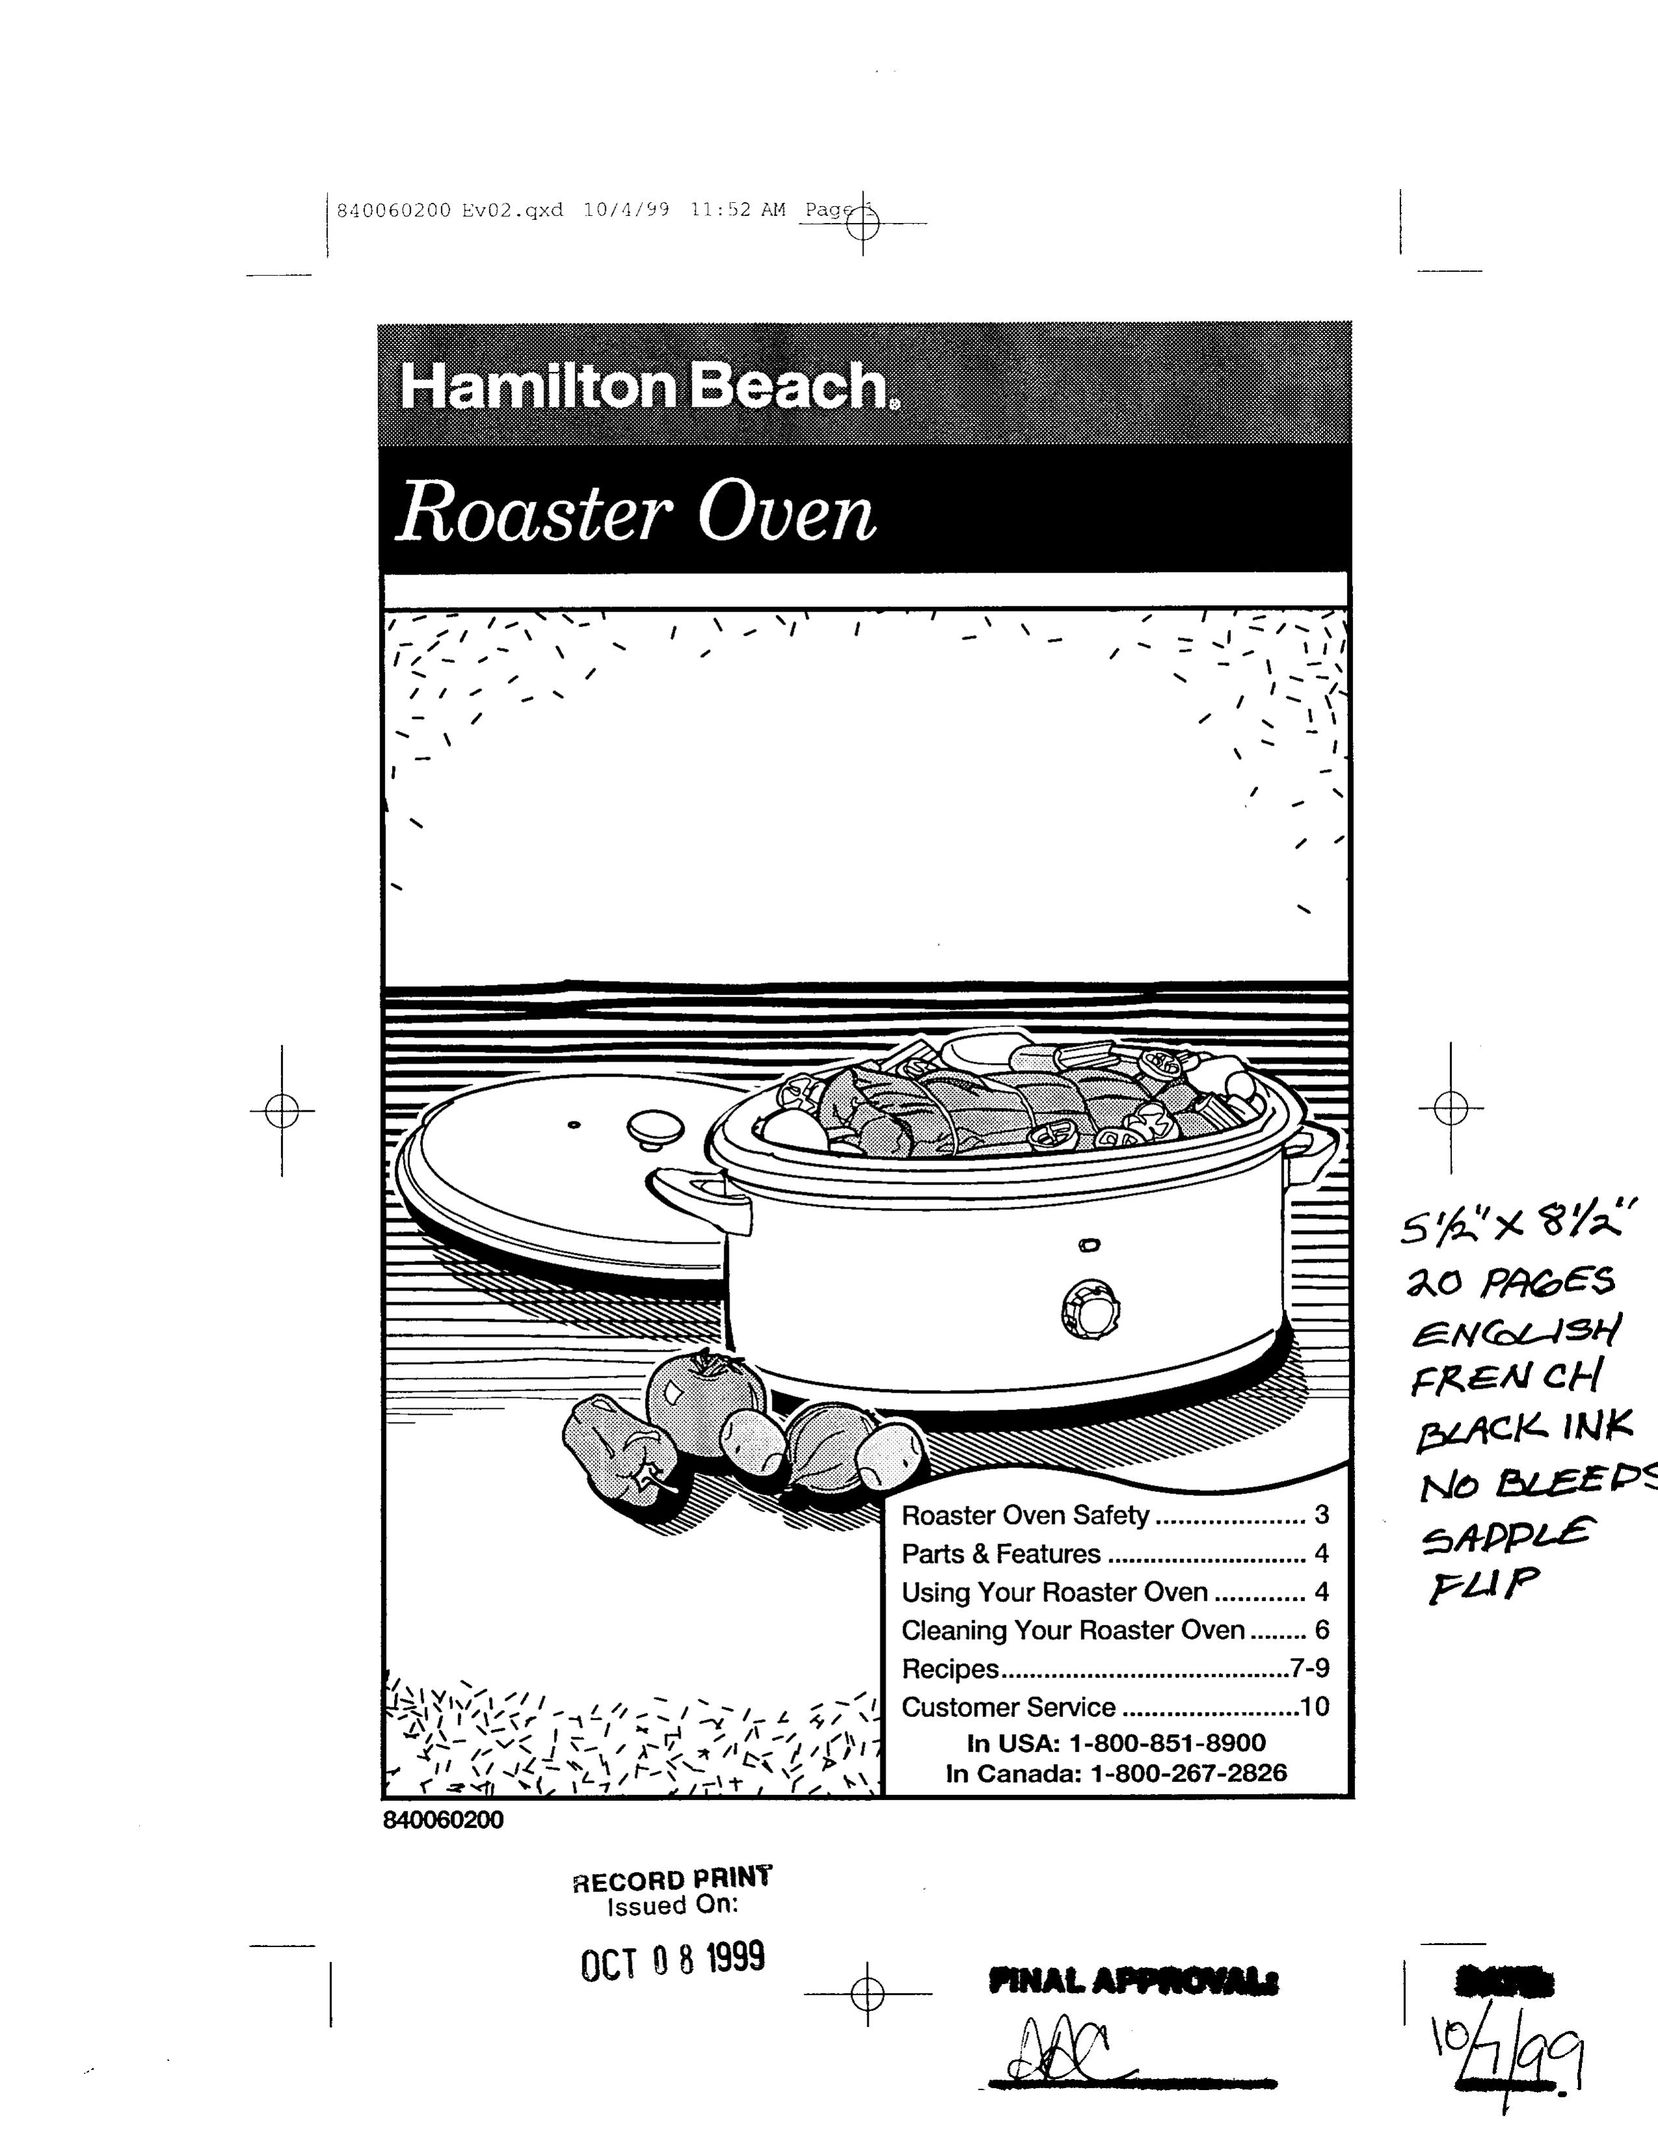 Hamilton Beach 32600 Oven User Manual